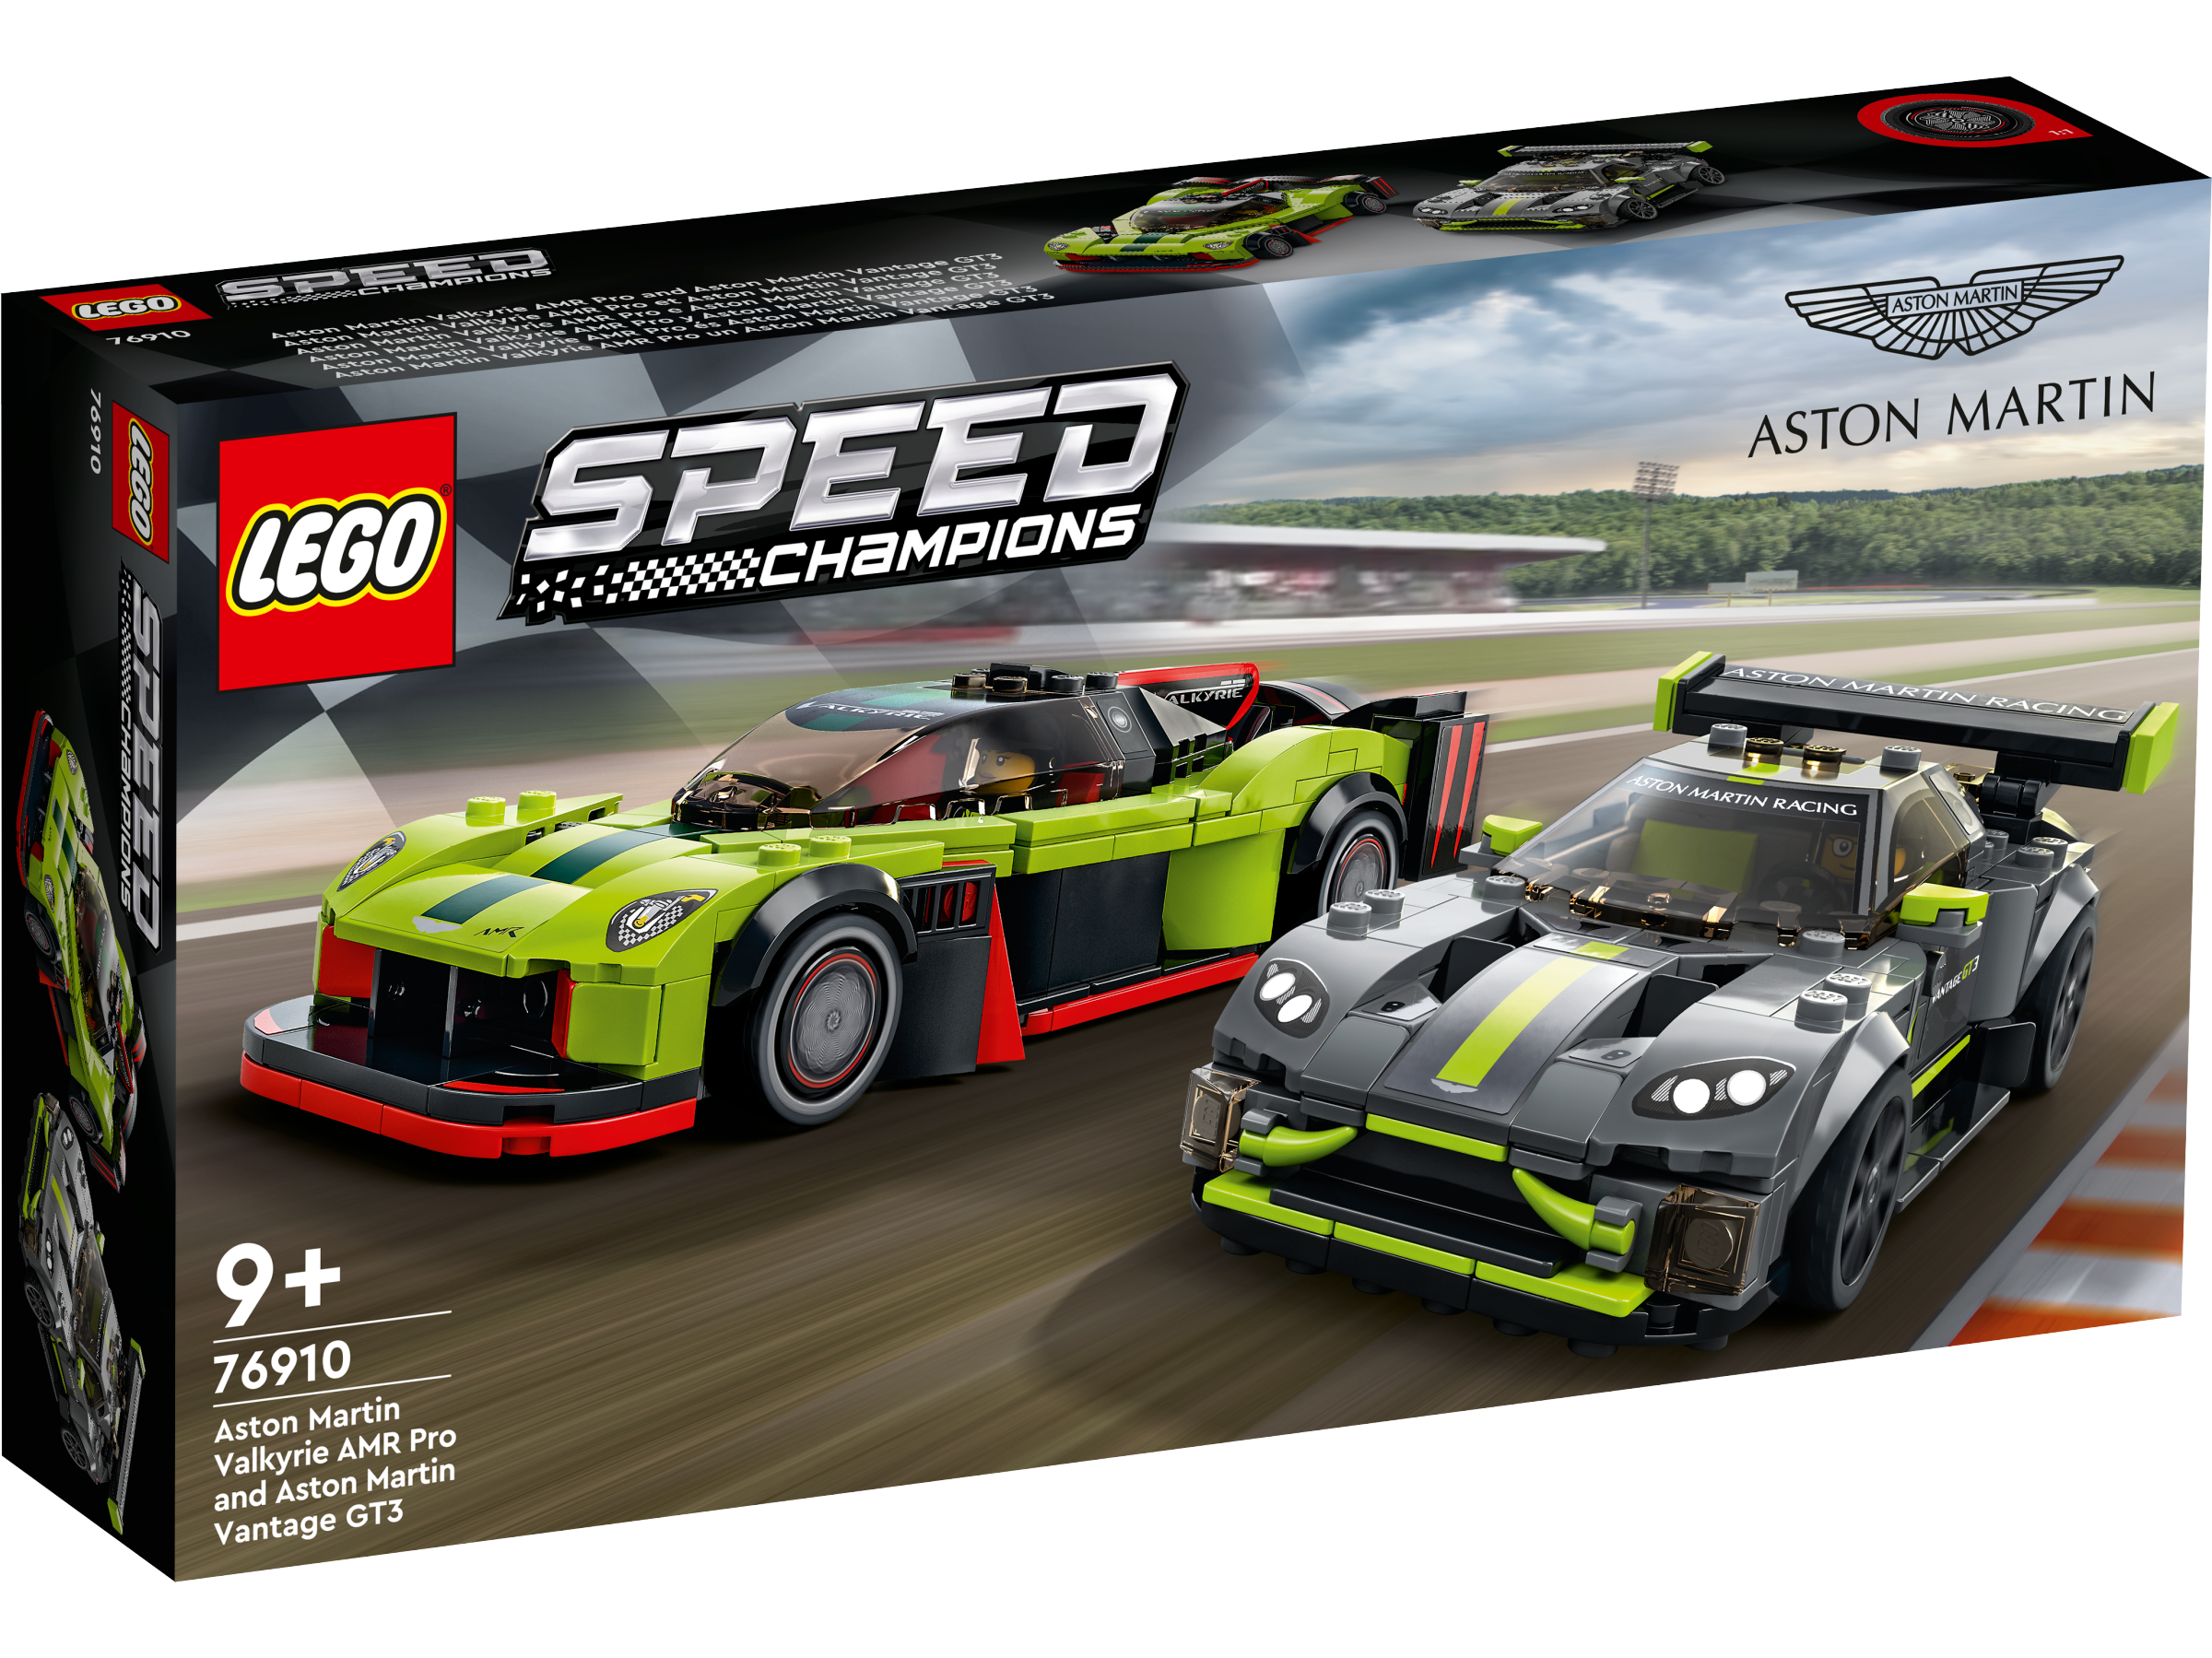 LEGO 76910 Aston Martin Valkyrie AMR Pro & Aston Martin Vantage GT3